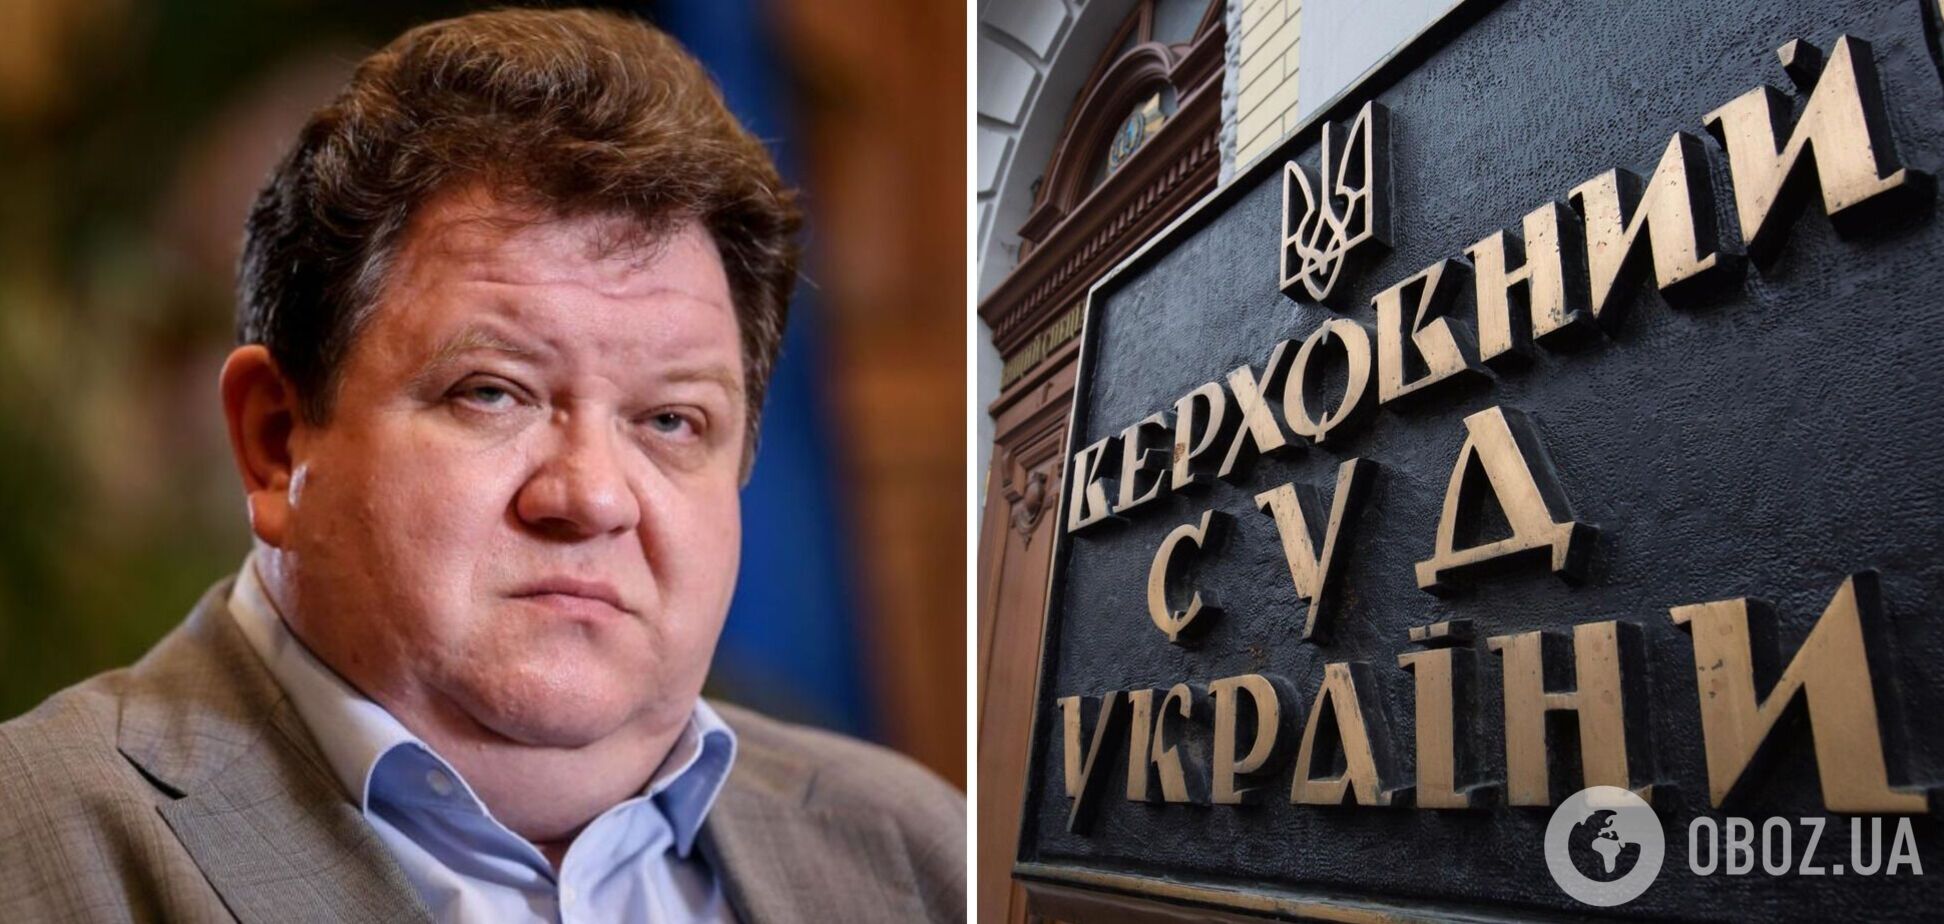 Верховный суд обжалует восстановление в должности судьи, у которого обнаружили российский паспорт